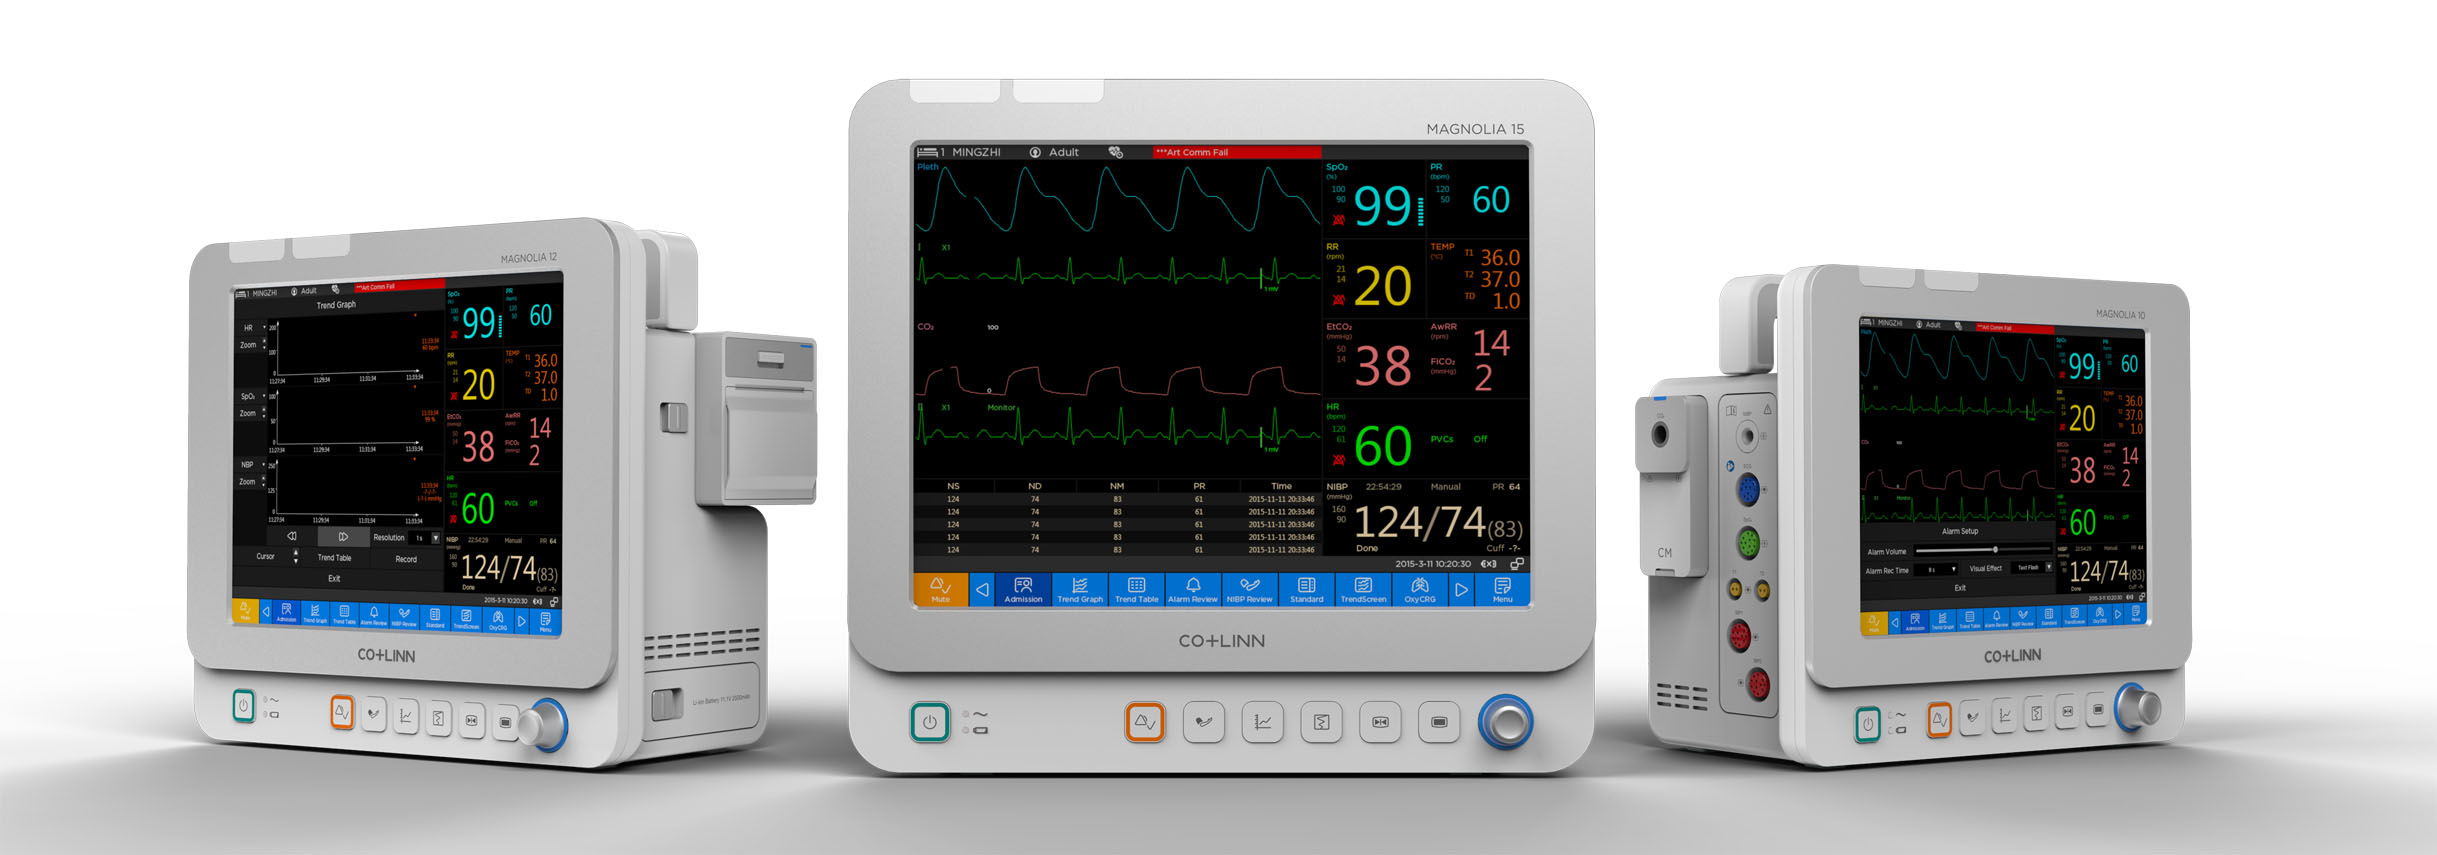 Patient Monitors & IT Solutions